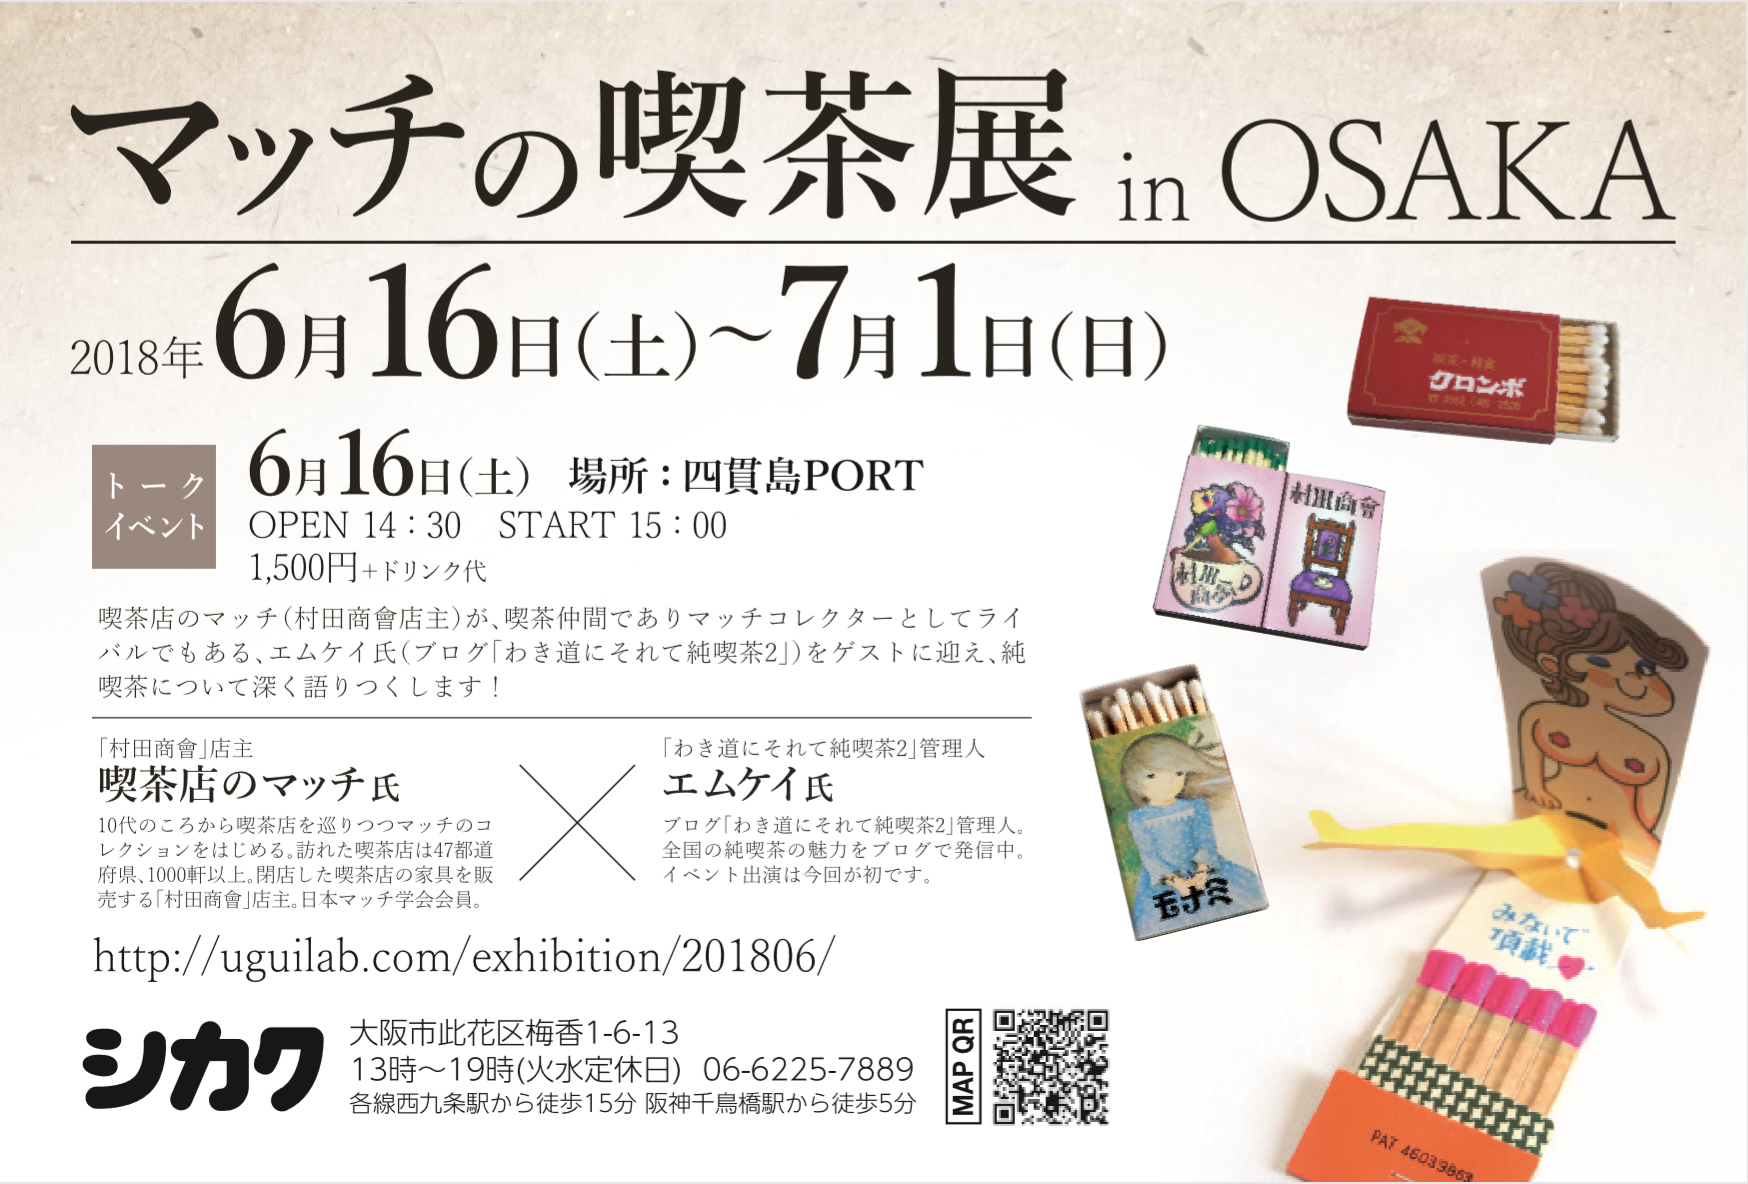 マッチの喫茶展 in OSAKA」大阪市内のシカクで開催 6月16日から7月1日まで | CaféAdvisor.